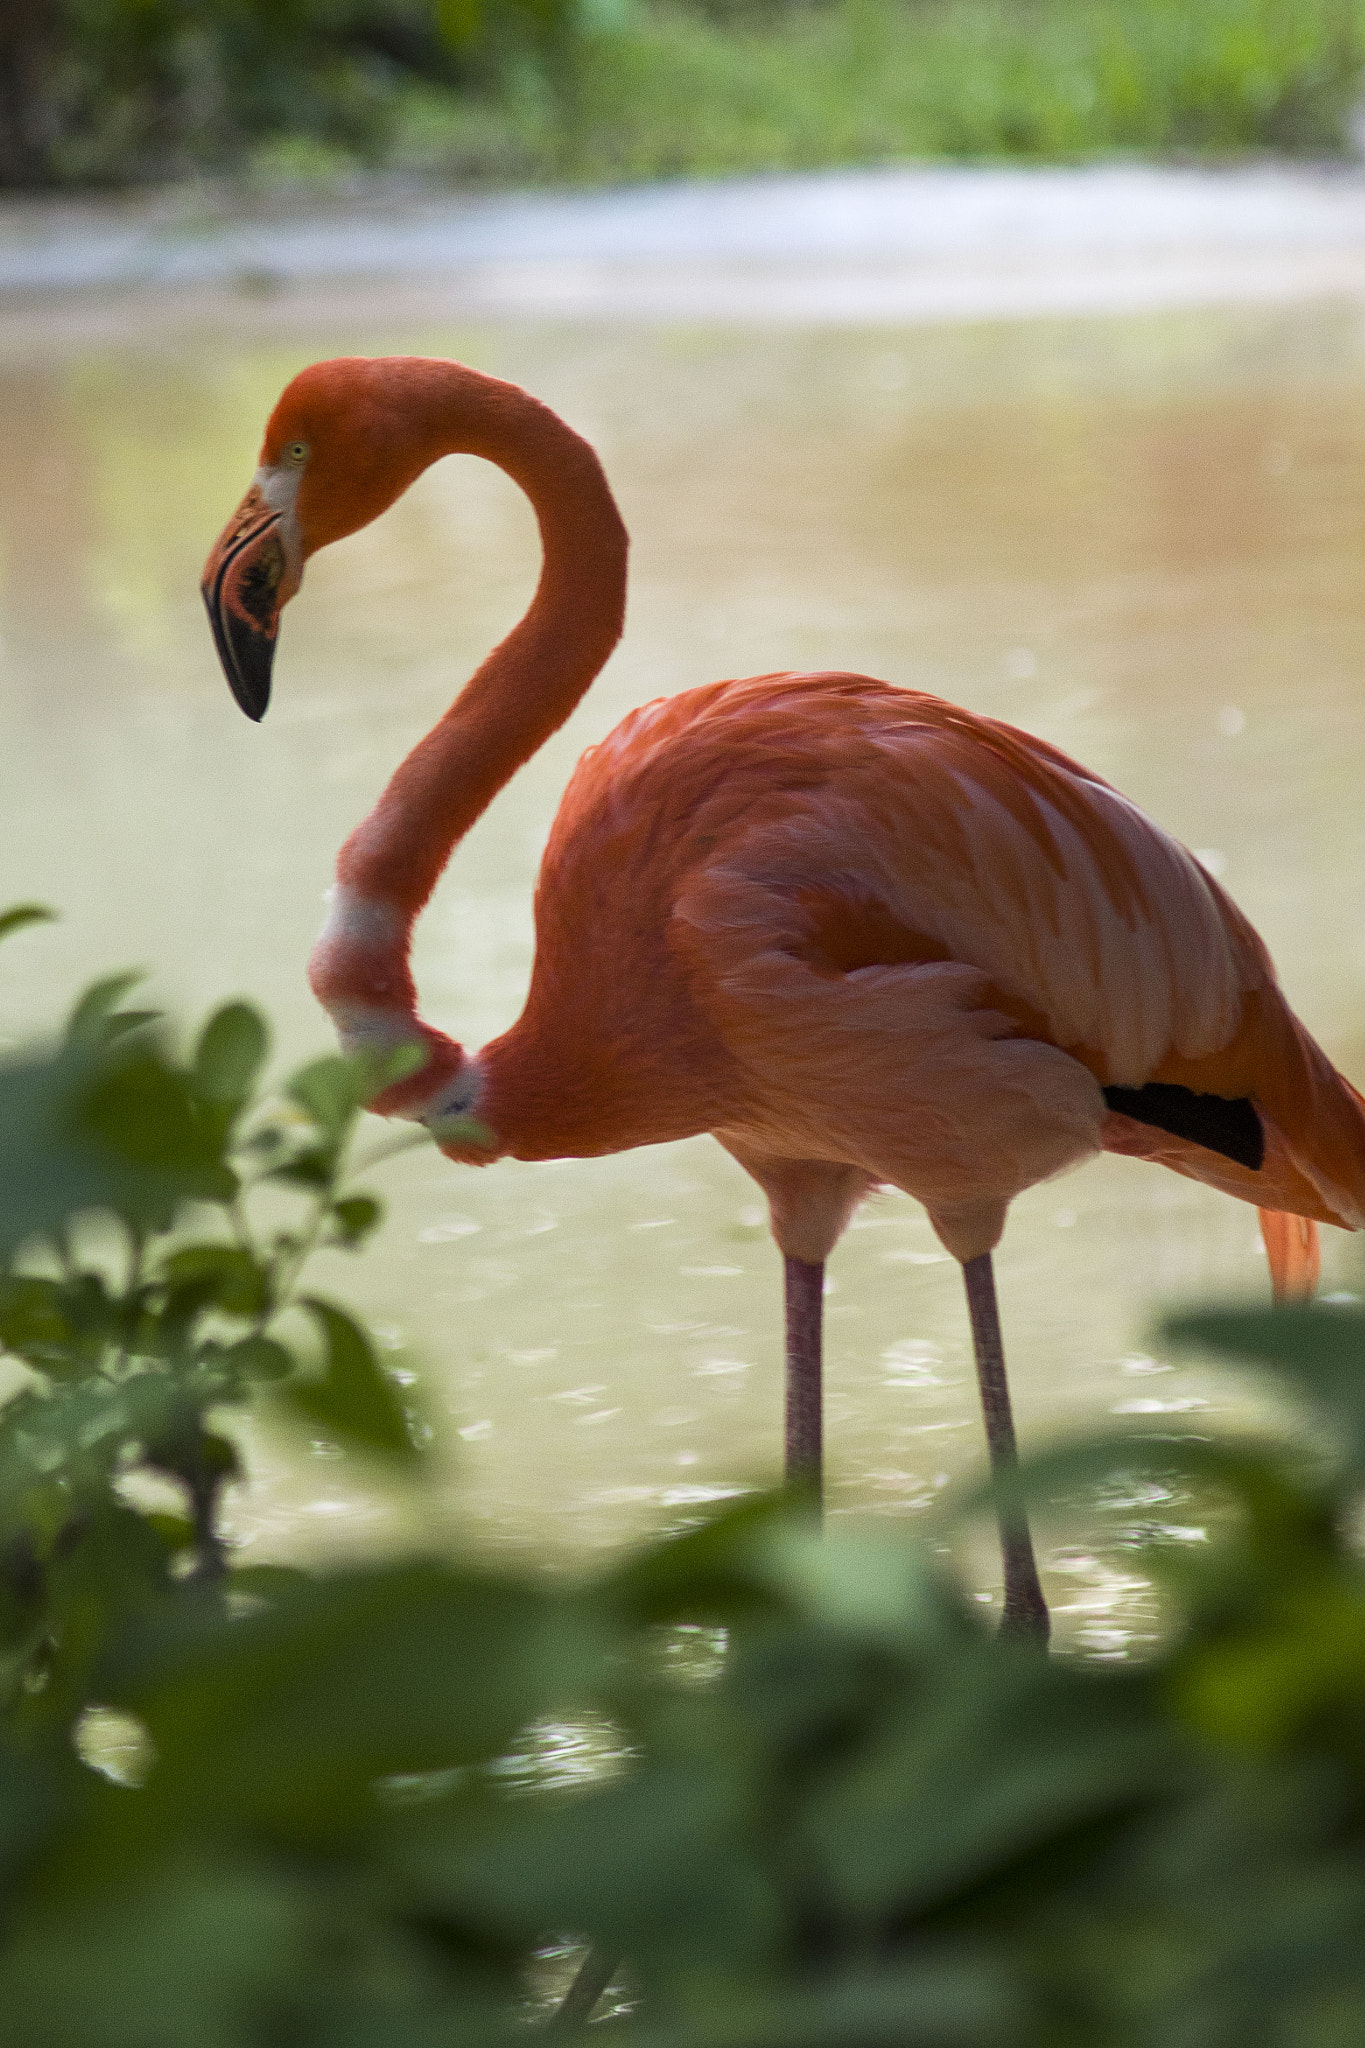 Nikon D7000 + AF Zoom-Nikkor 75-300mm f/4.5-5.6 sample photo. Flamingo photography